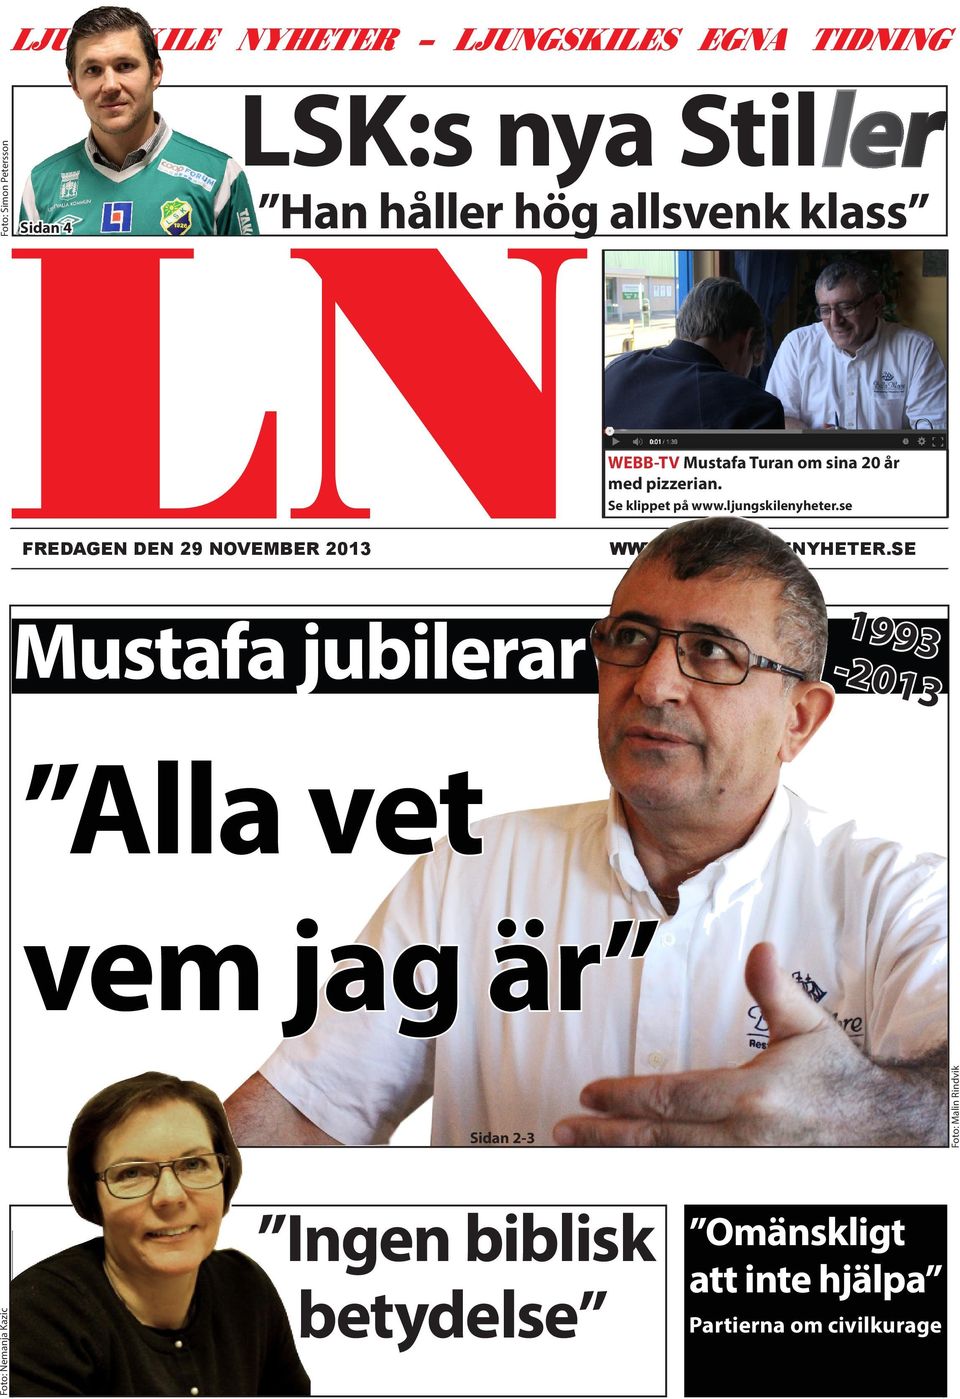 ljungskilenyheter.se FREDAGEN DEN 29 NOVEMBER 2013 WWW.LJUNGSKILENYHETER.